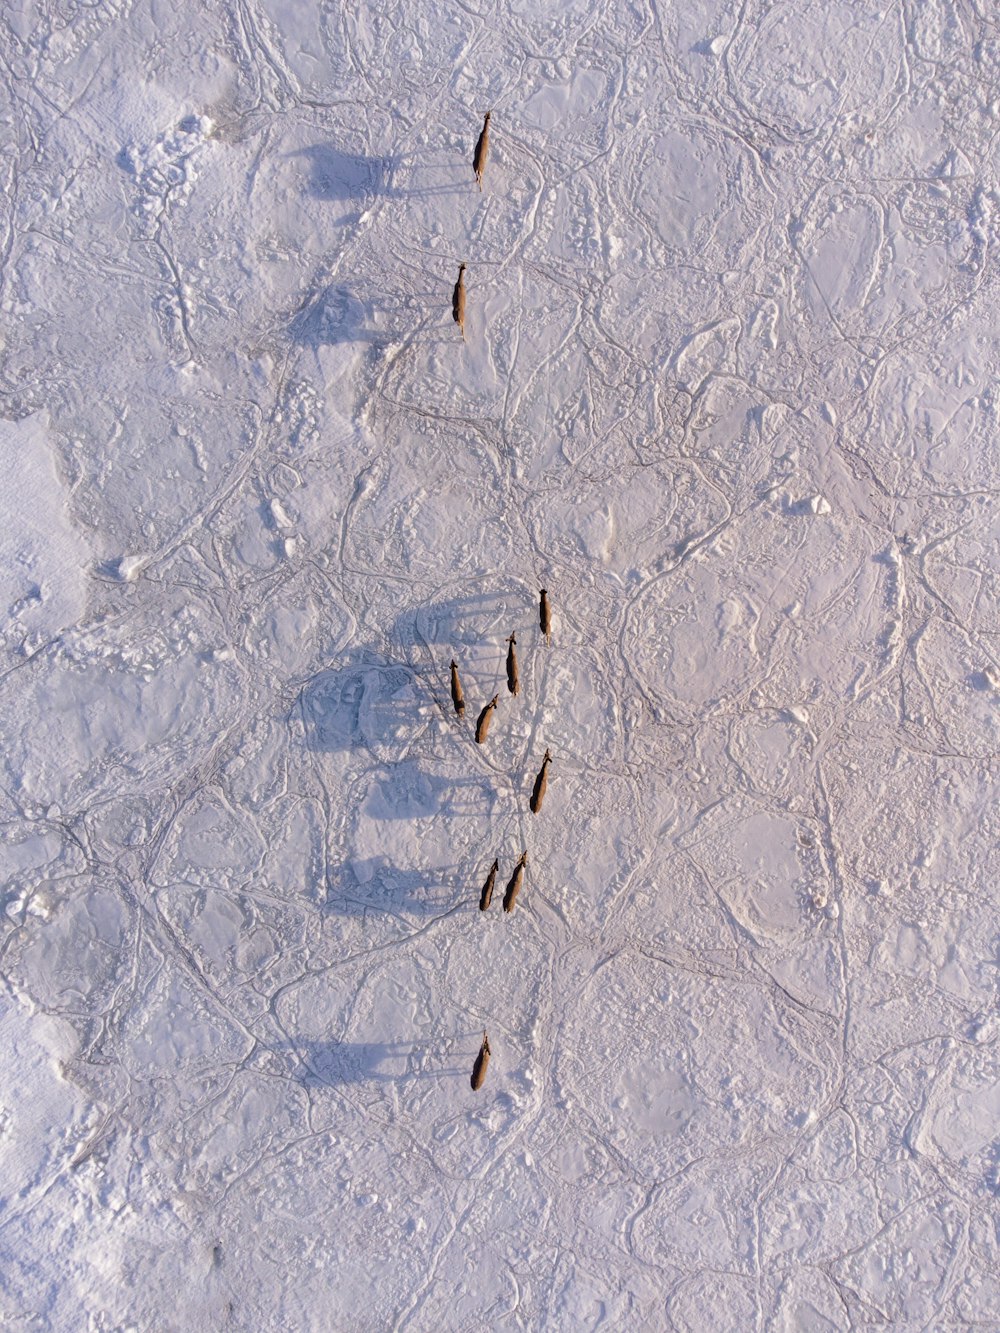 um grupo de pássaros caminhando através de um campo coberto de neve